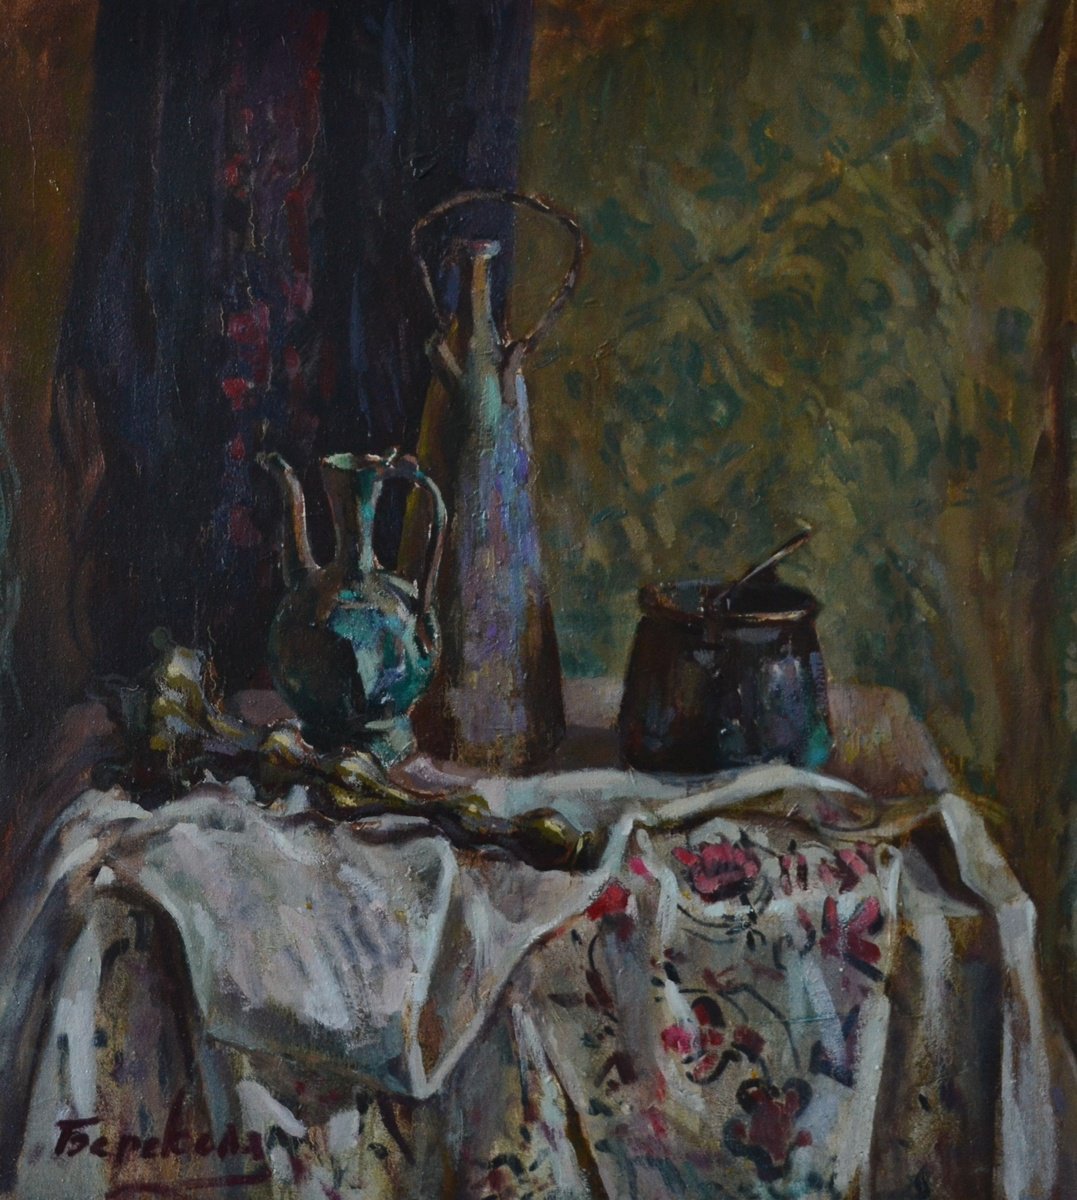 Still Life with Green Teapot by Andriy Berekelia